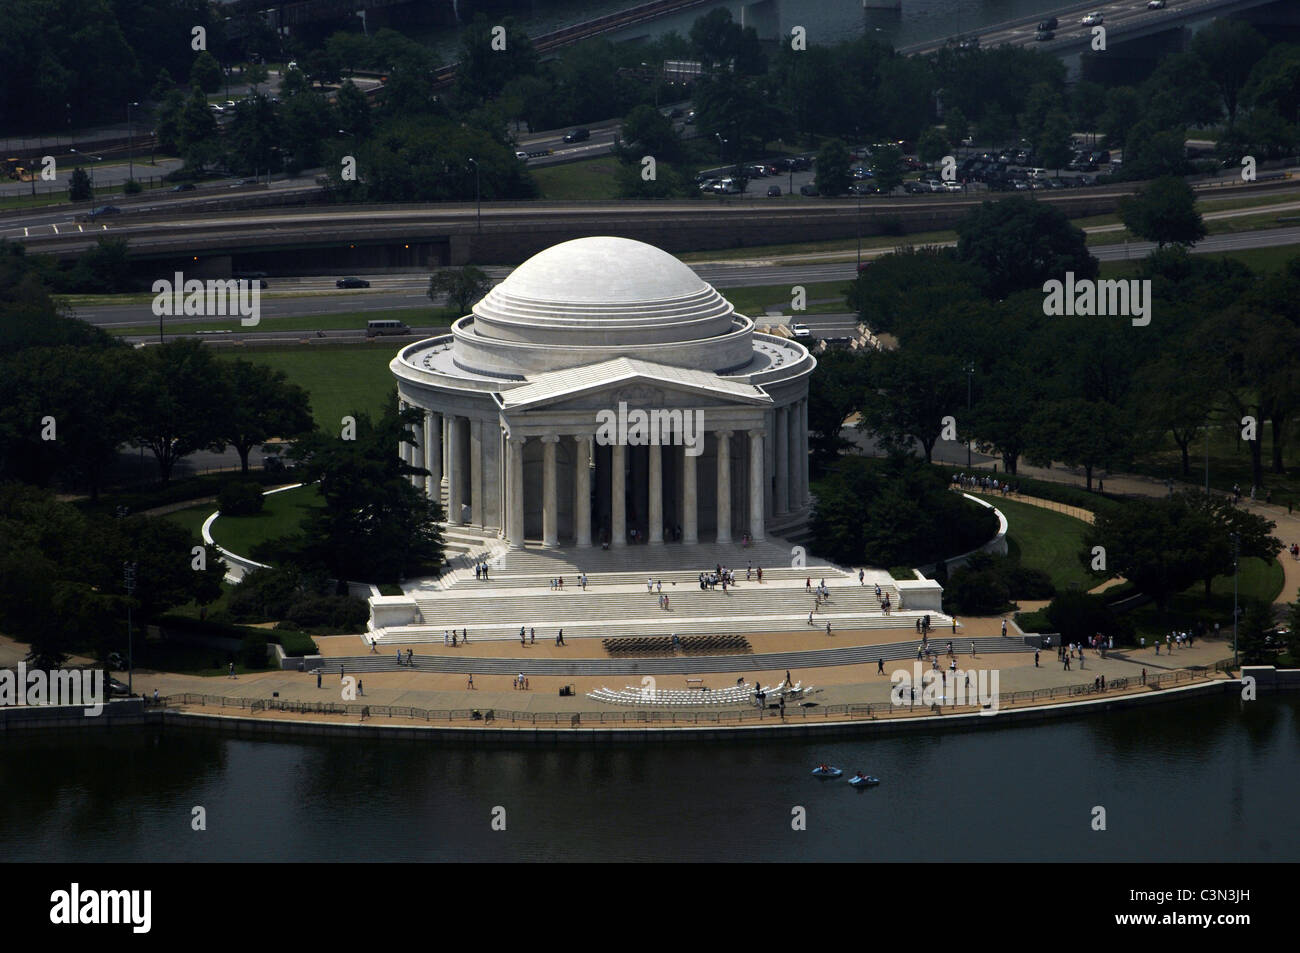 United States. Washington D.C. Thomas Jefferson Memorial. Stock Photo